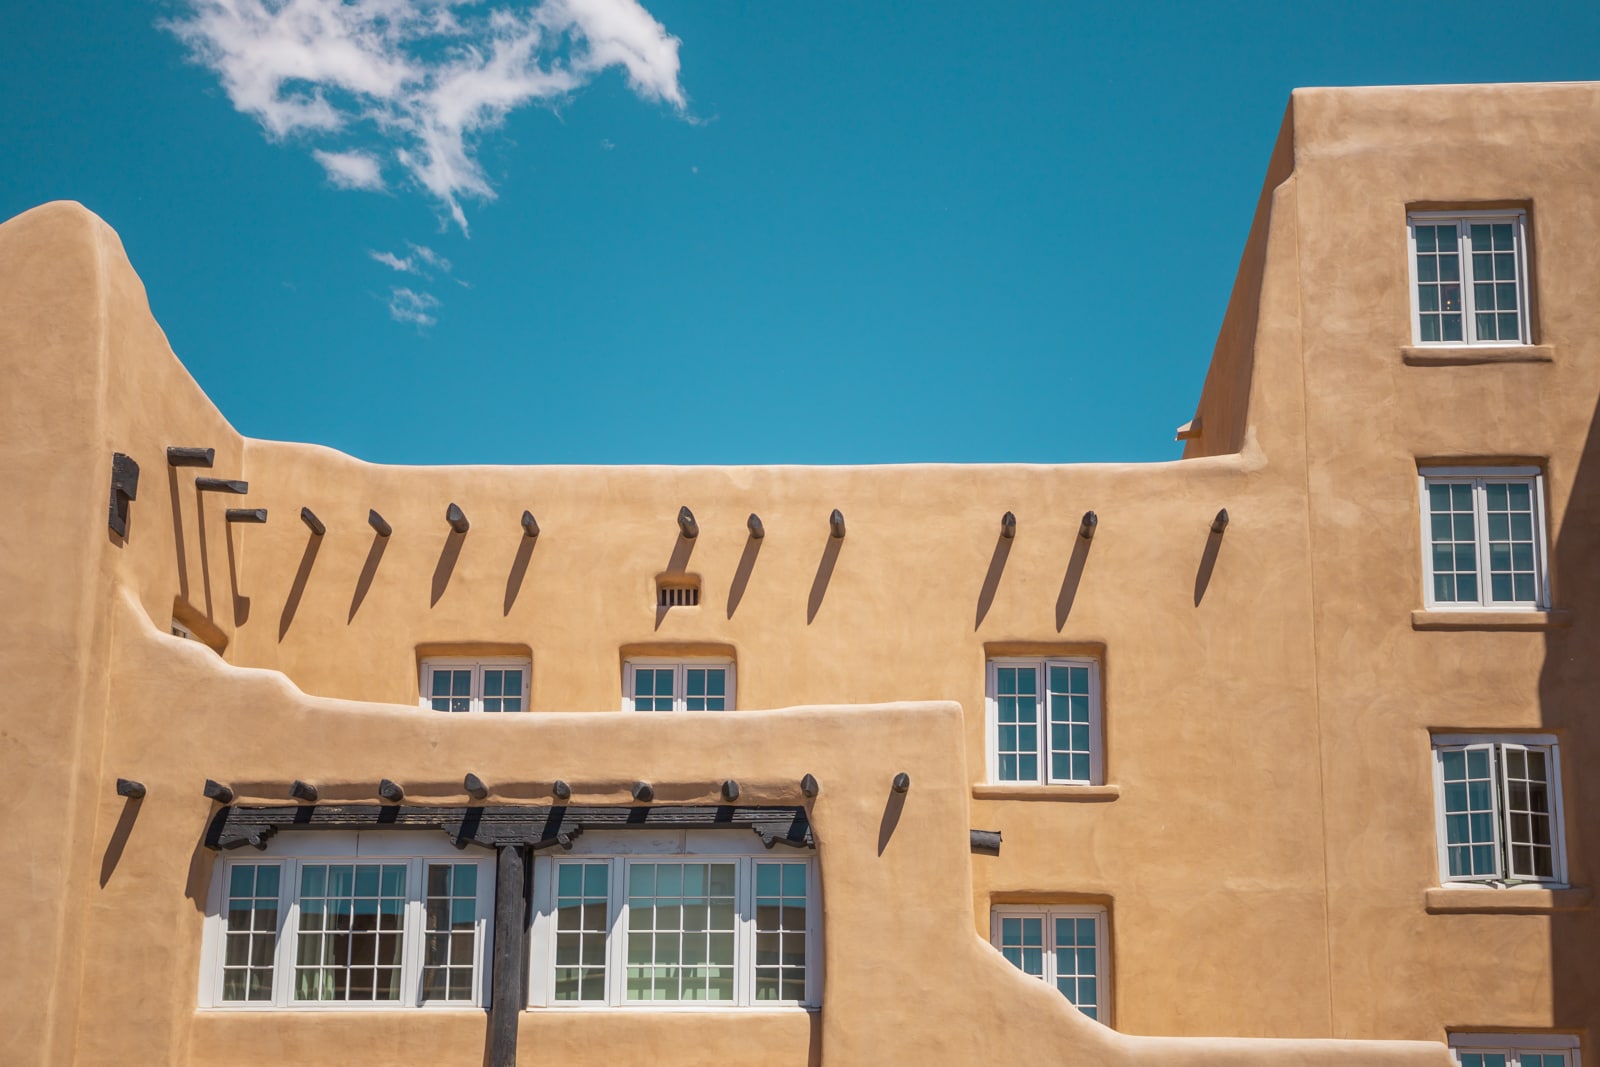 Pueblo style adobe building in Santa Fe